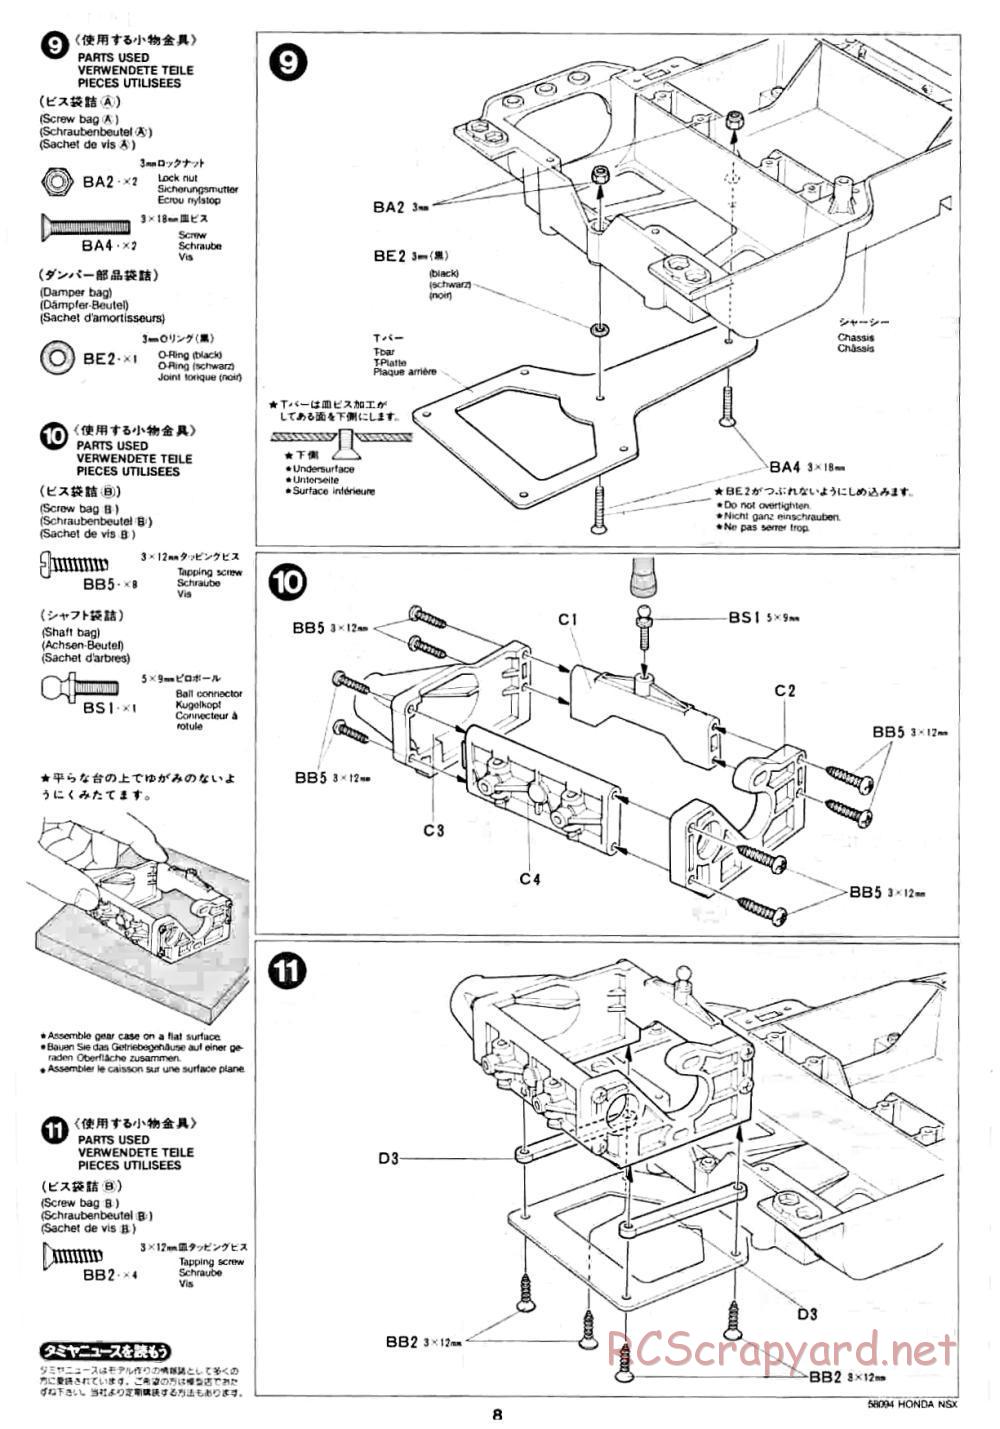 Tamiya - Honda NSX - 58094 - Manual - Page 8